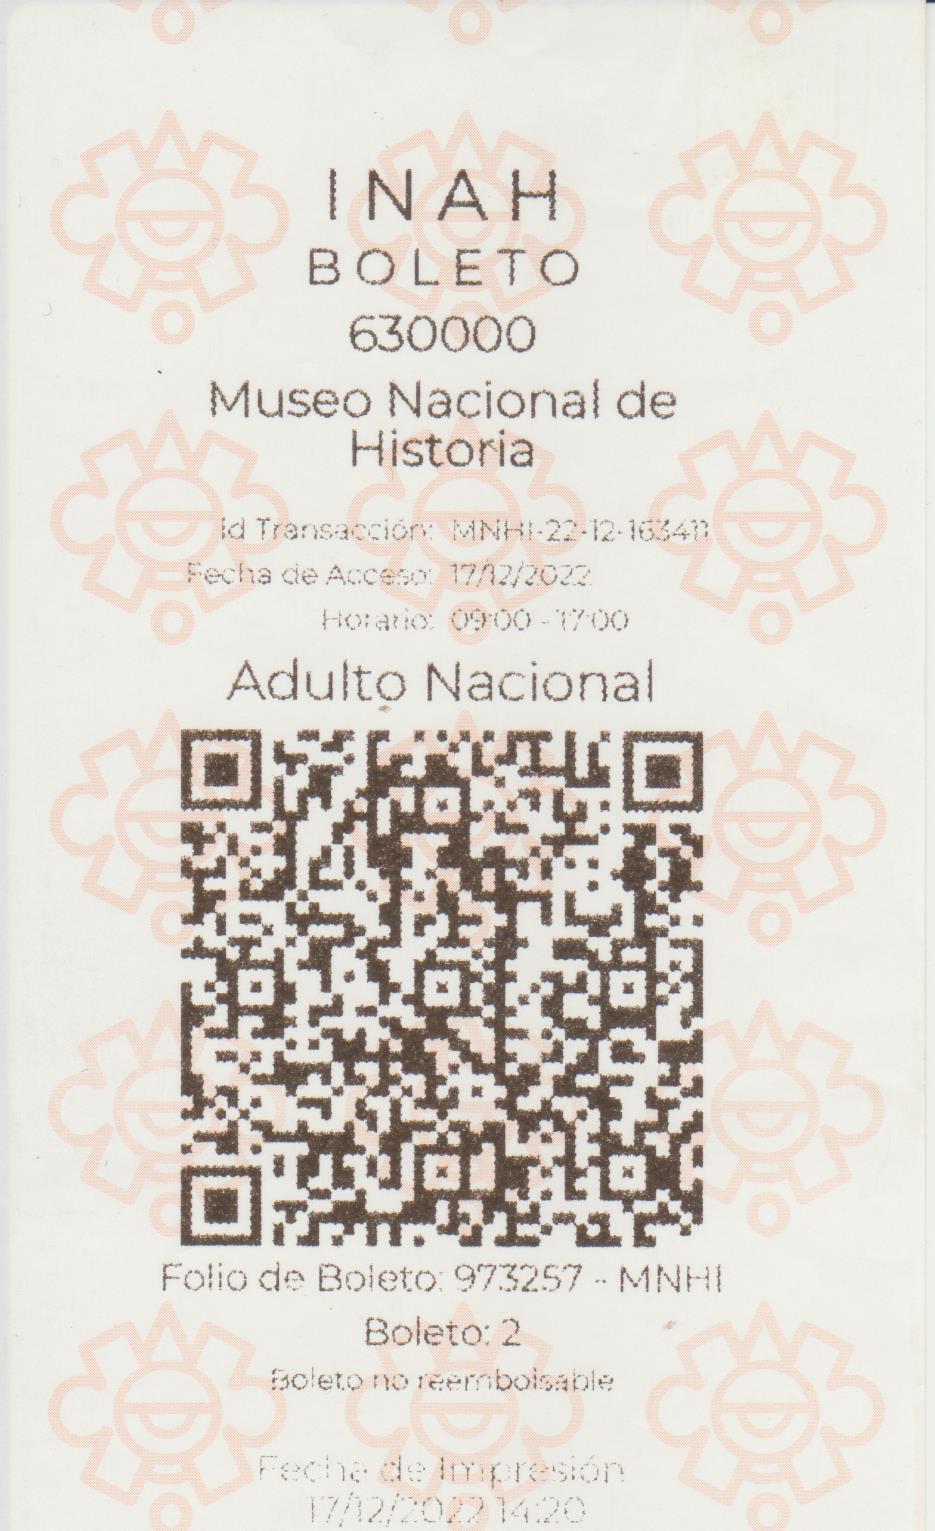 163) Museo Nacional de Historia - Castillo de Chapultepec